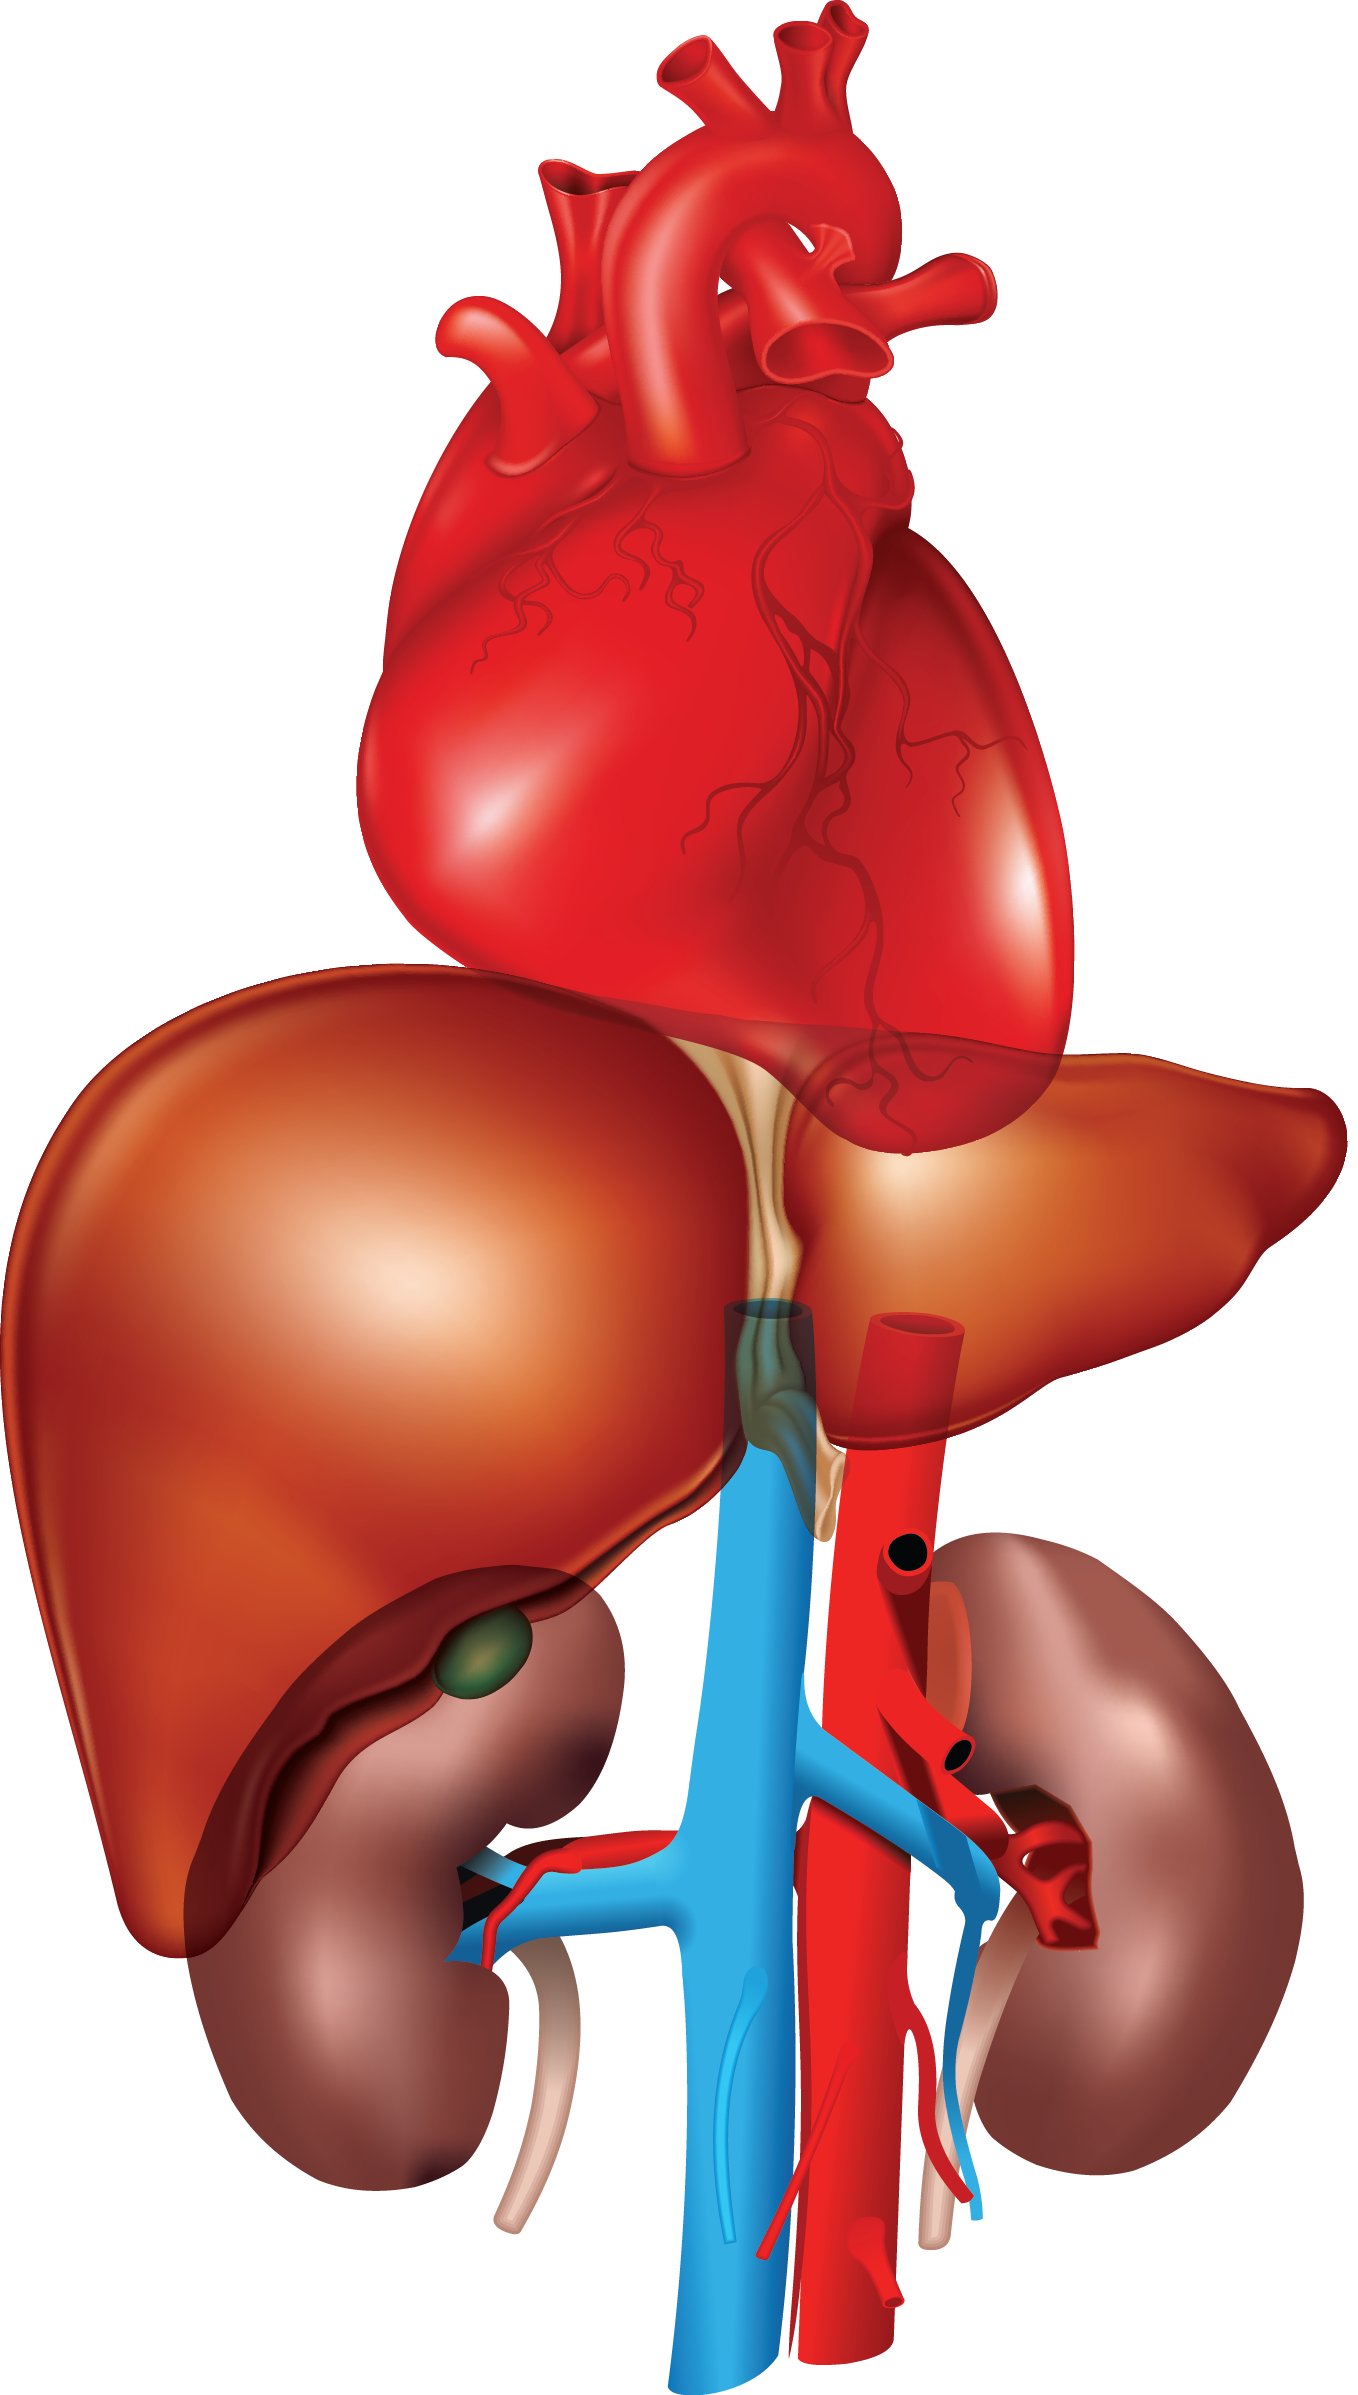 Heart, liver, kidney - transparent bkgd_20130718031616